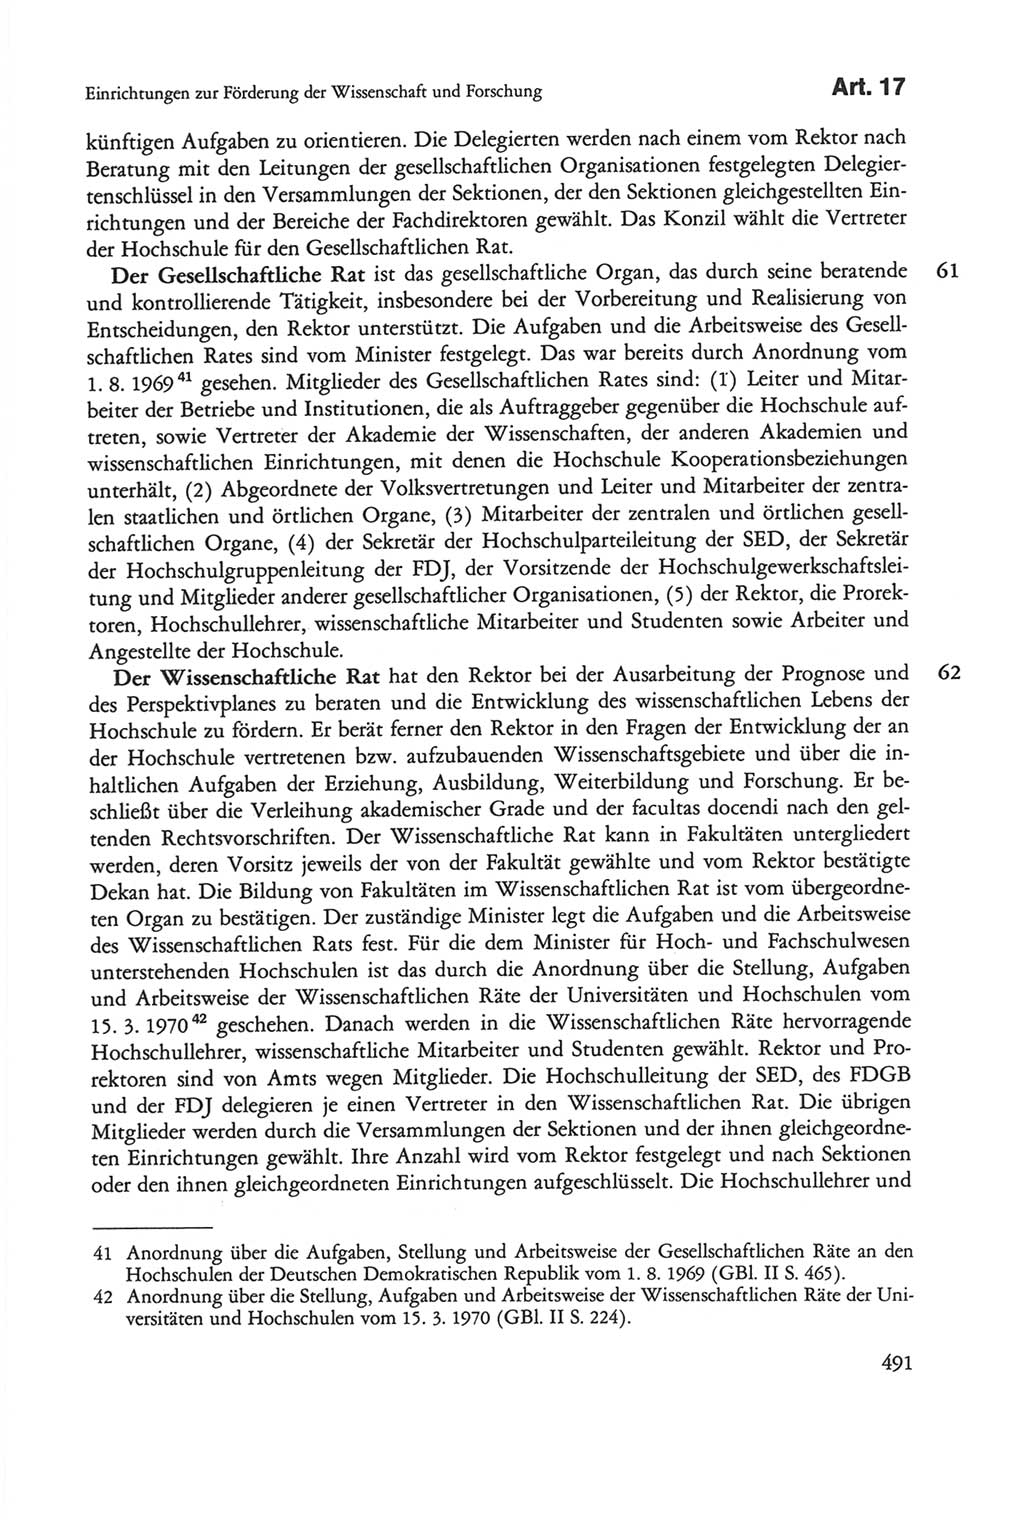 Die sozialistische Verfassung der Deutschen Demokratischen Republik (DDR), Kommentar 1982, Seite 491 (Soz. Verf. DDR Komm. 1982, S. 491)